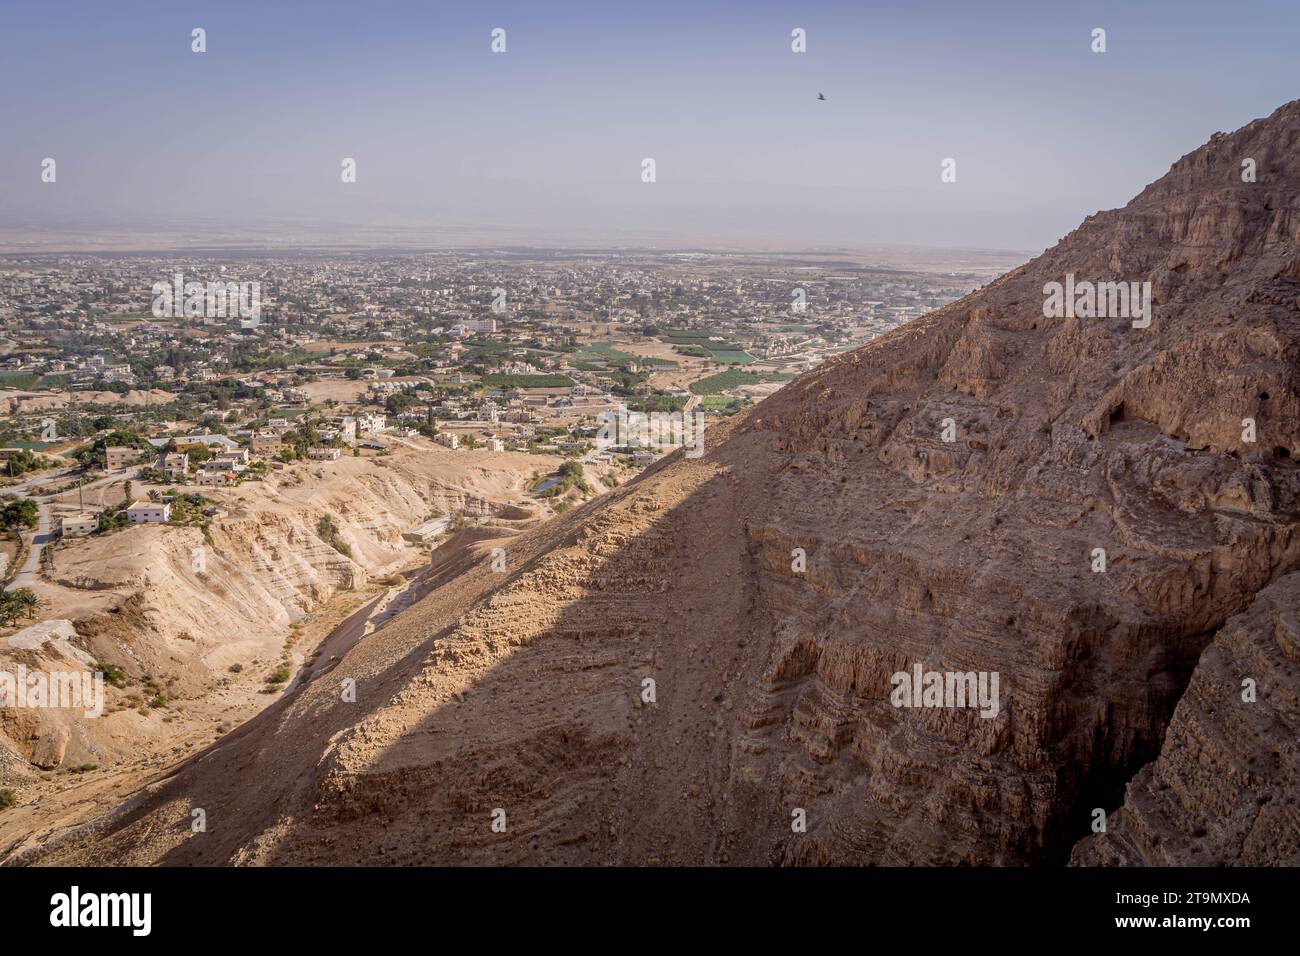 Der Blick auf den Berg der Versuchung, einen christlichen Schrein, mit der Stadt Jericho im Hintergrund im Westjordanland, Palästina. Stockfoto